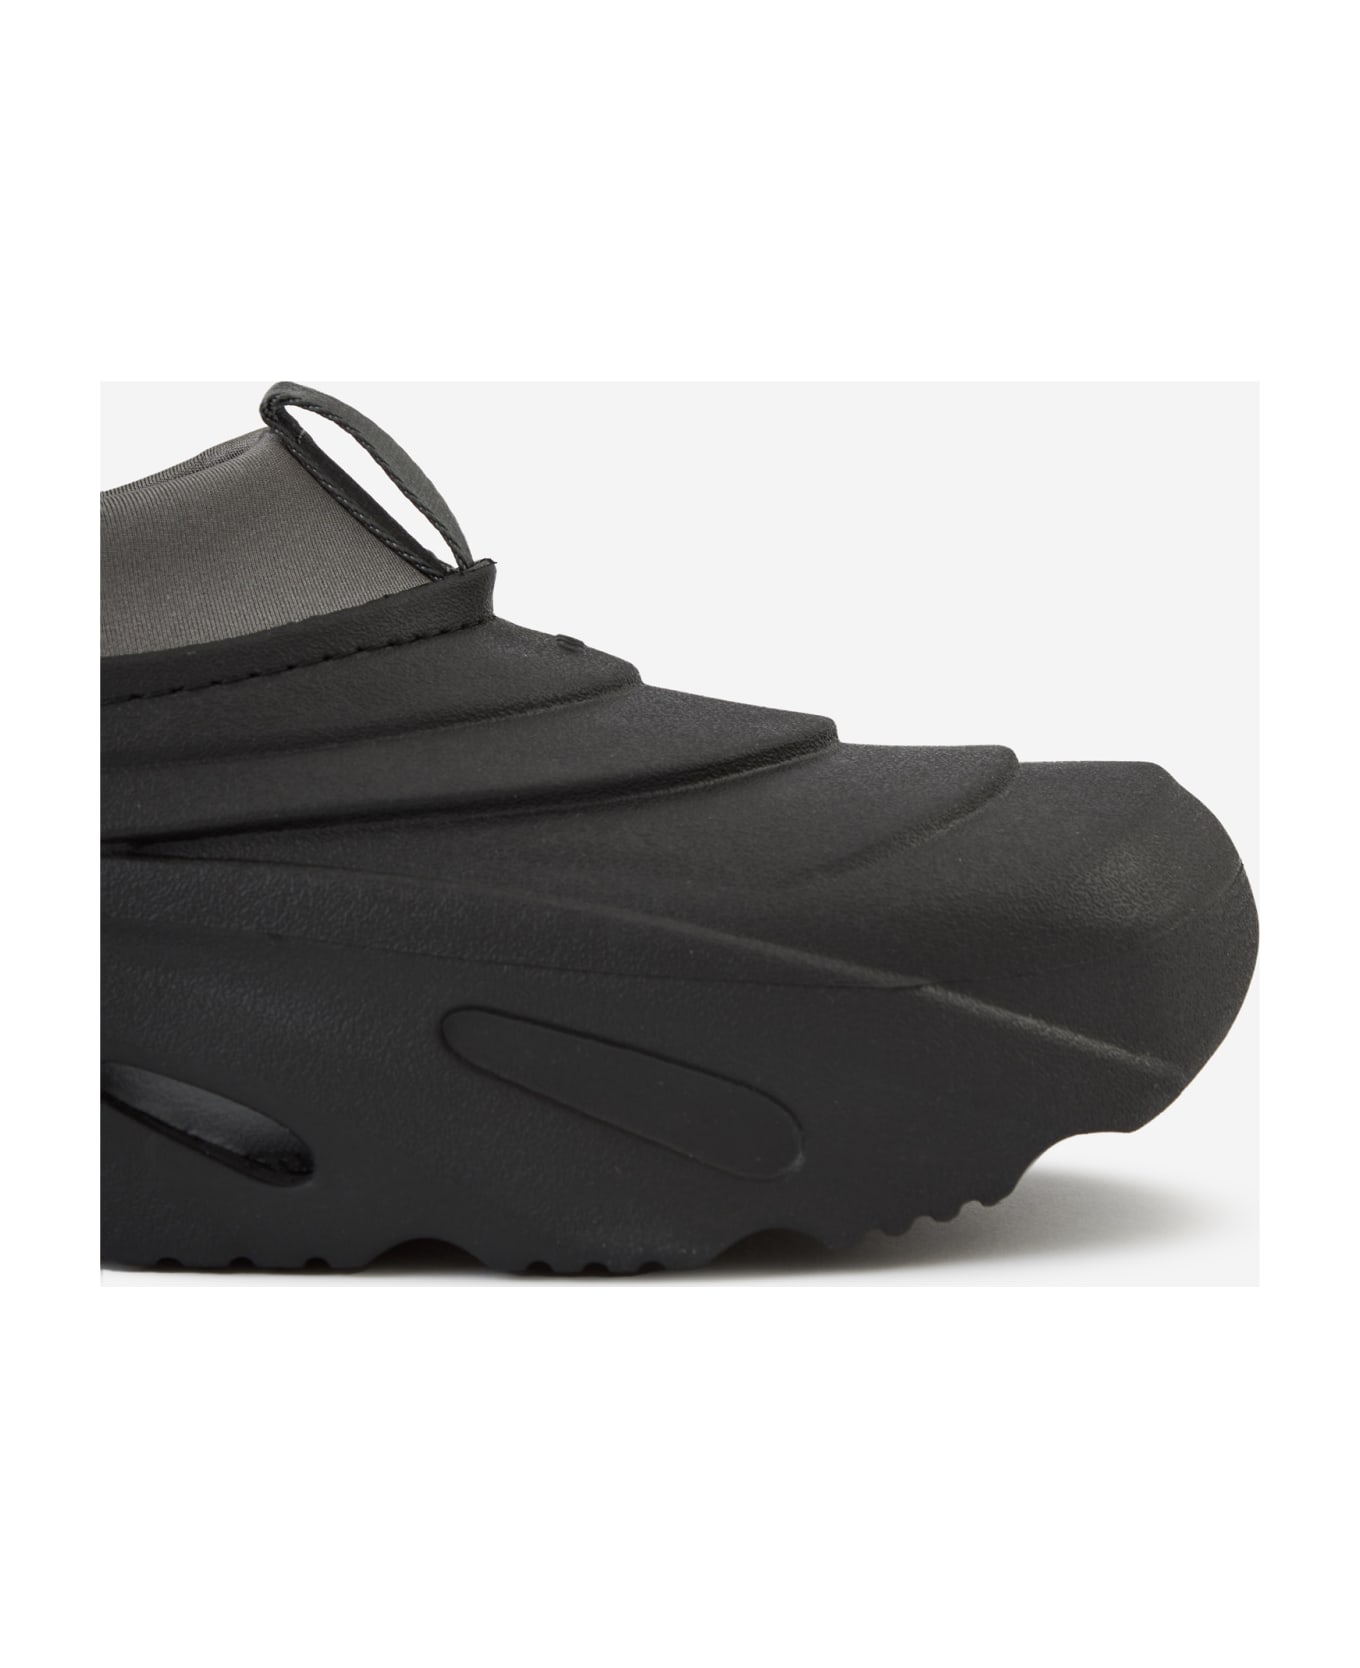 Crocs Echo Storm Shoes - black